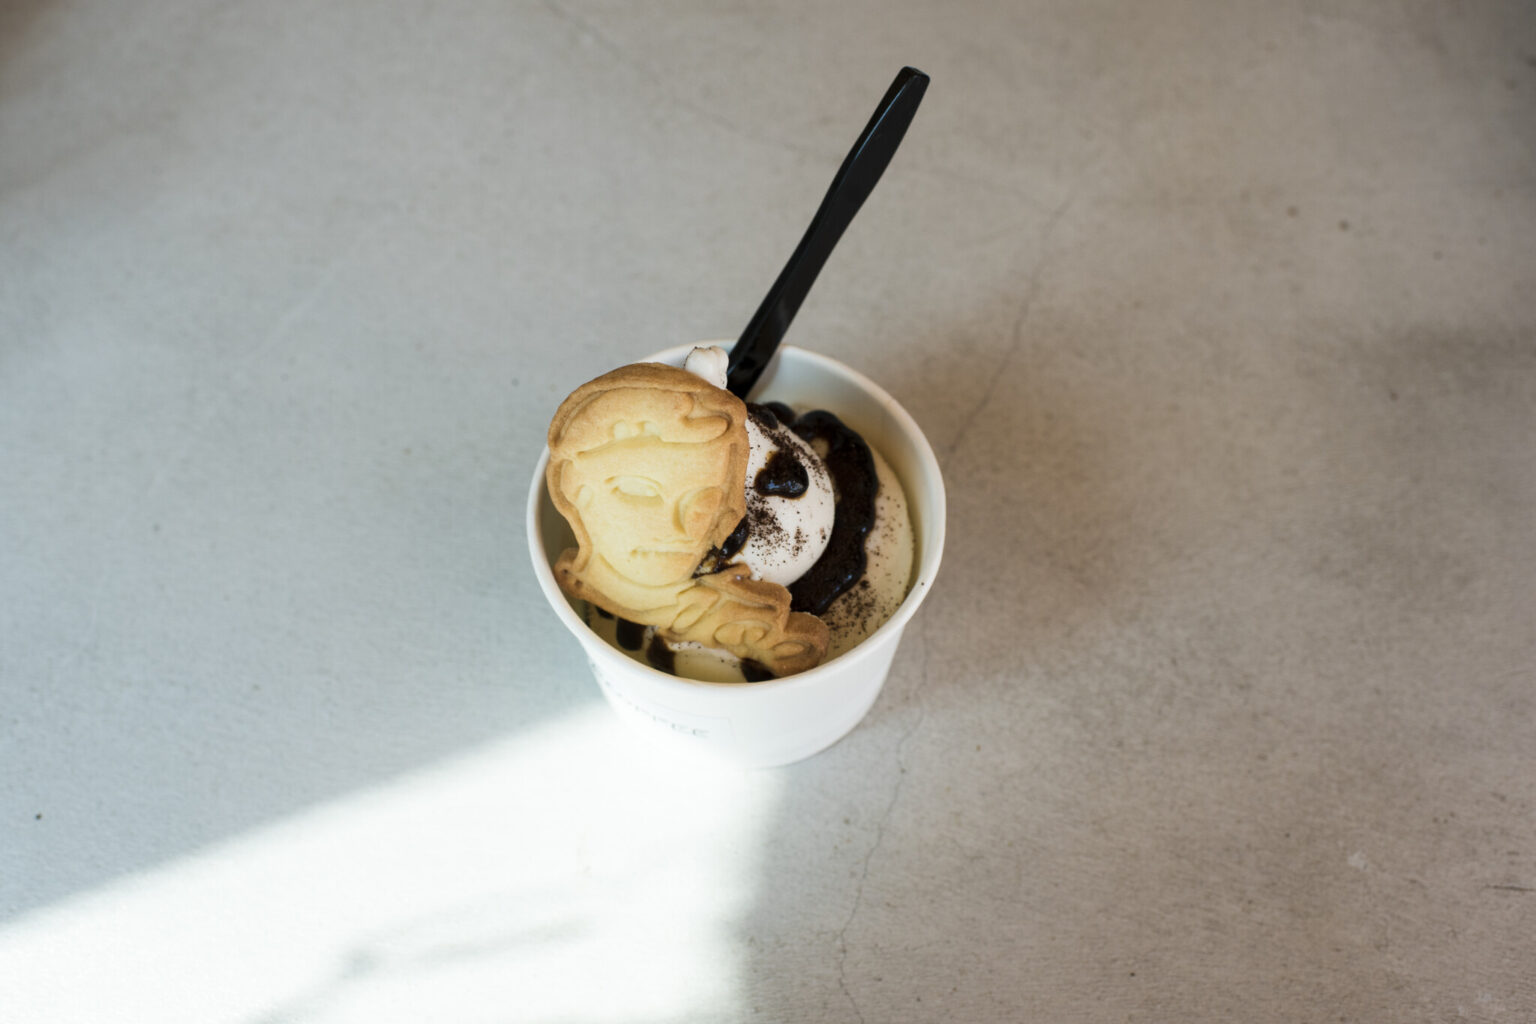 アーモンドミルクのソフトクリーム オリジナルコーヒーソース680円。店のロゴにもなっているキャラクター「ジョー」型クッキーも好評。